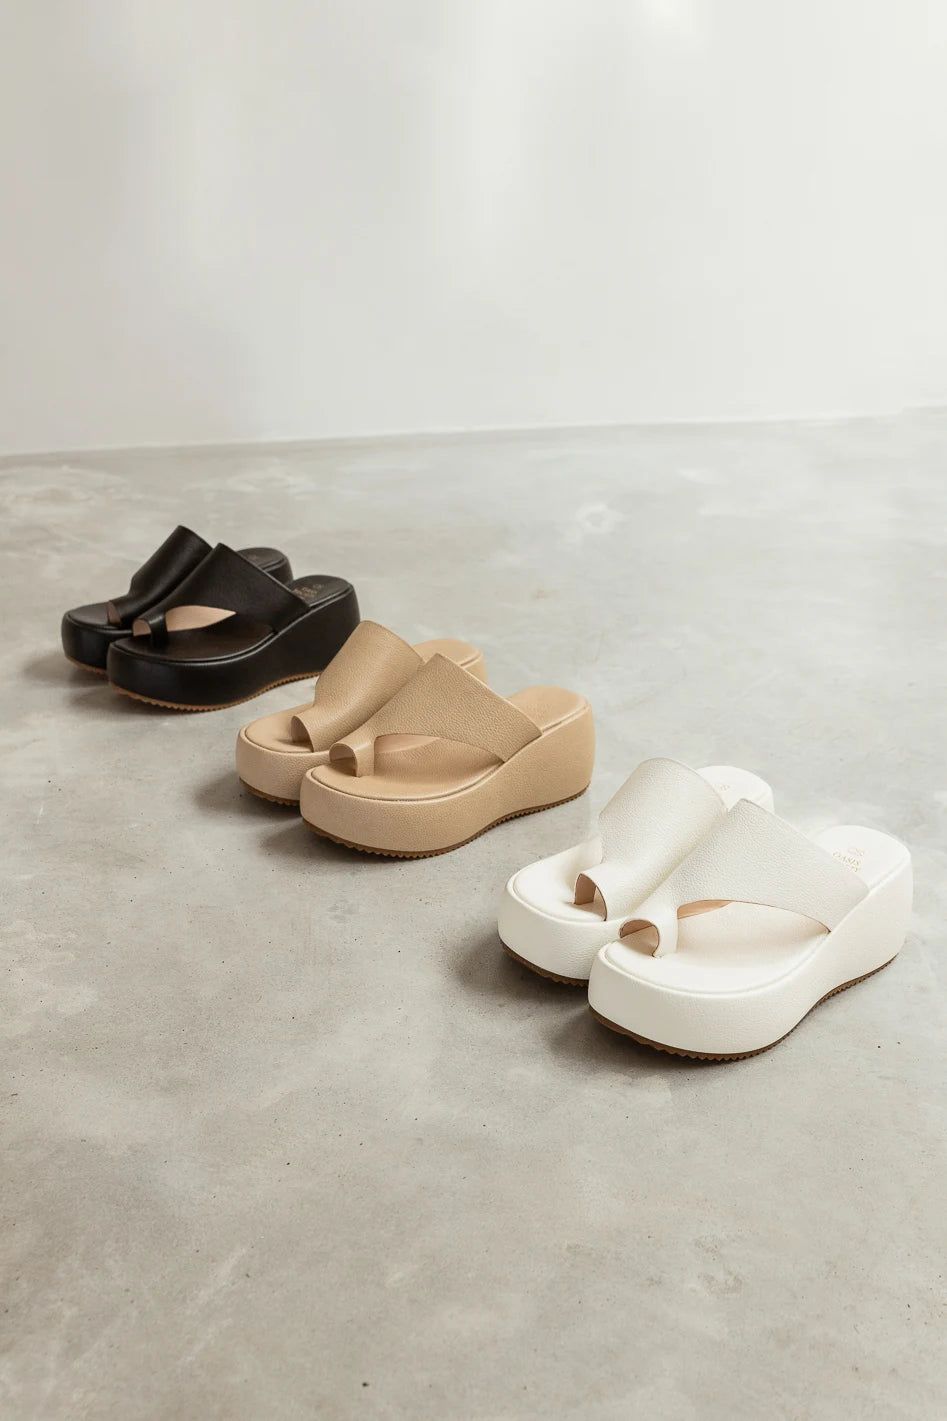 Adrianna Platform Sandals in White | Bohme